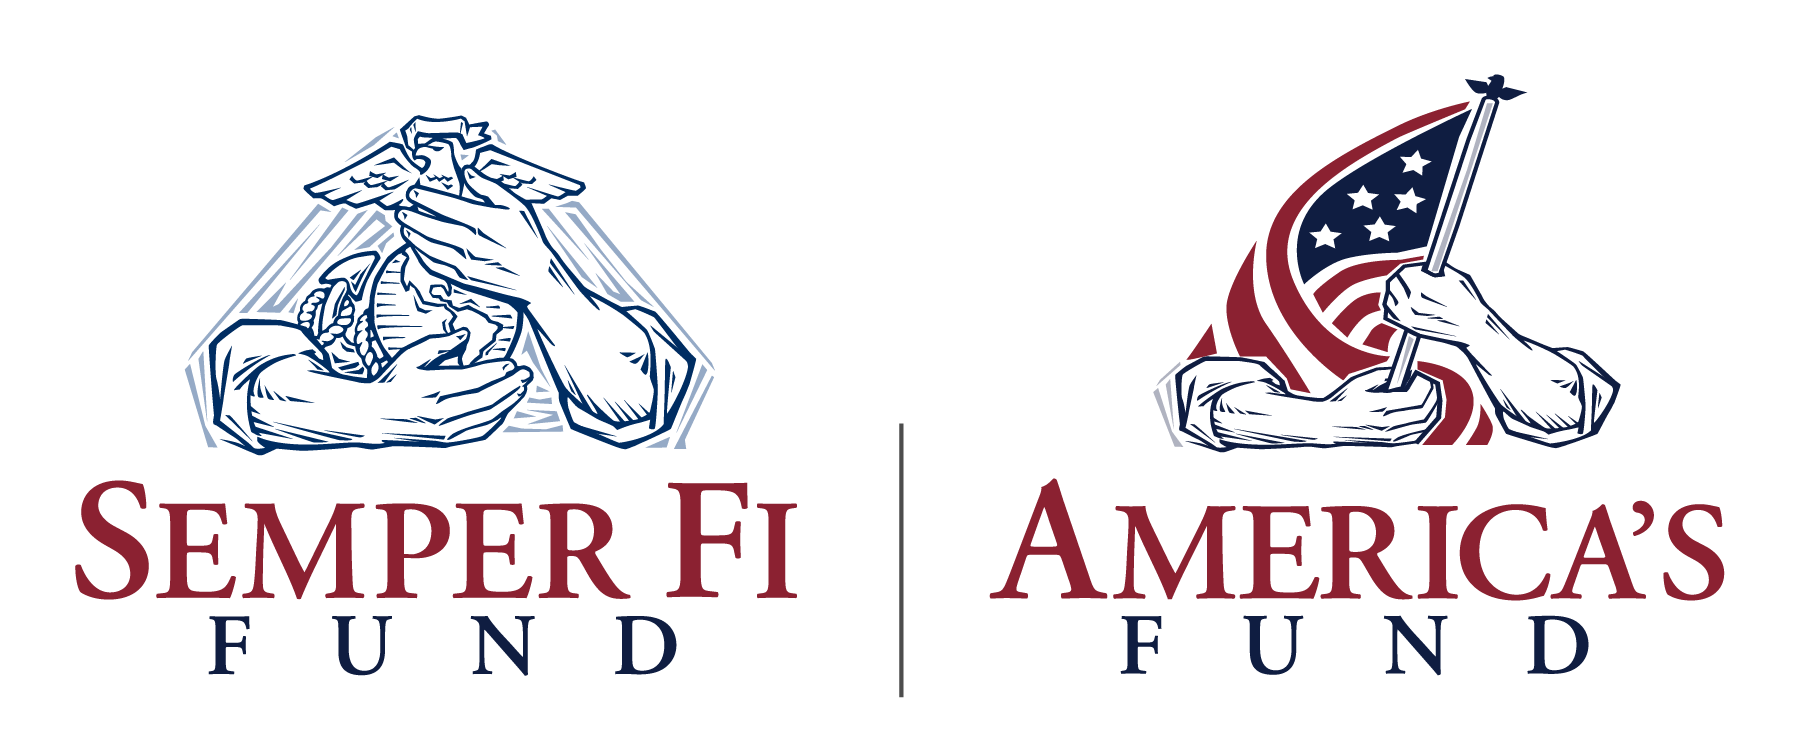 Team Semper Fi Logo - Team Semper Fi America Fund. The Hartford Ski Spectacular